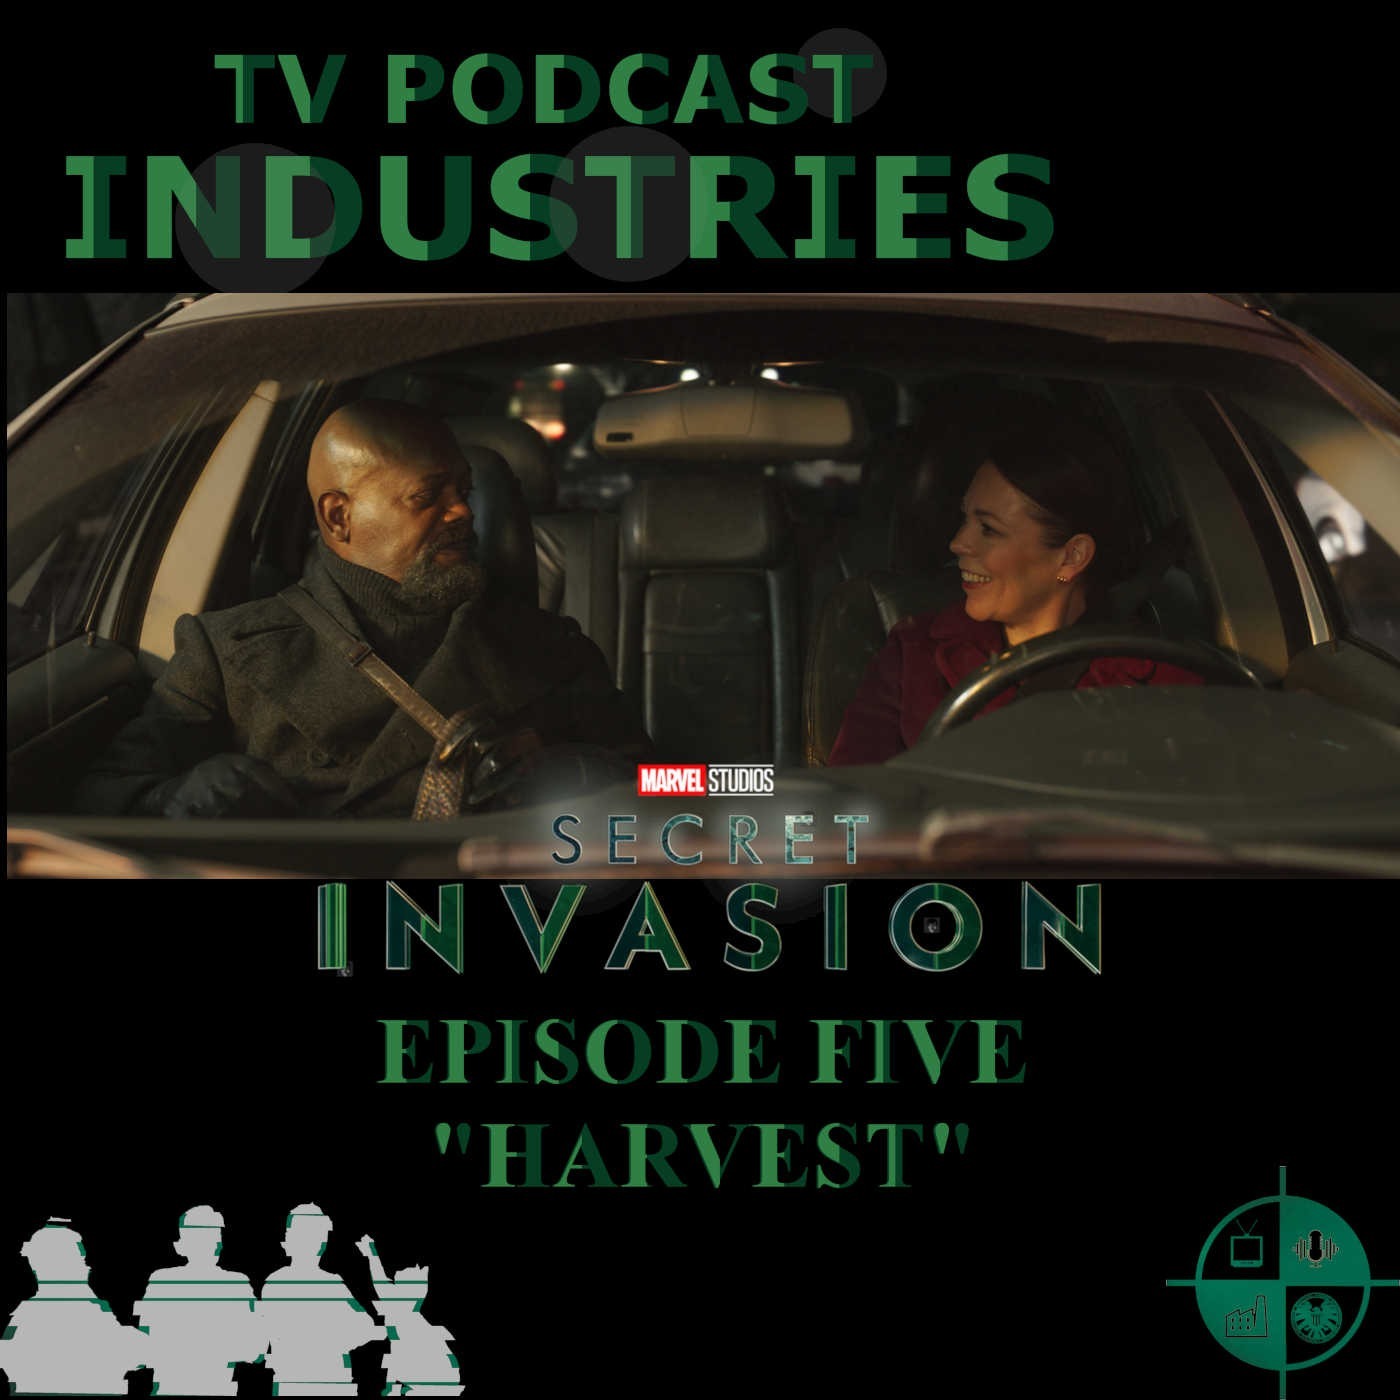 Secret Invasion Episode 5 "Harvest" Podcast